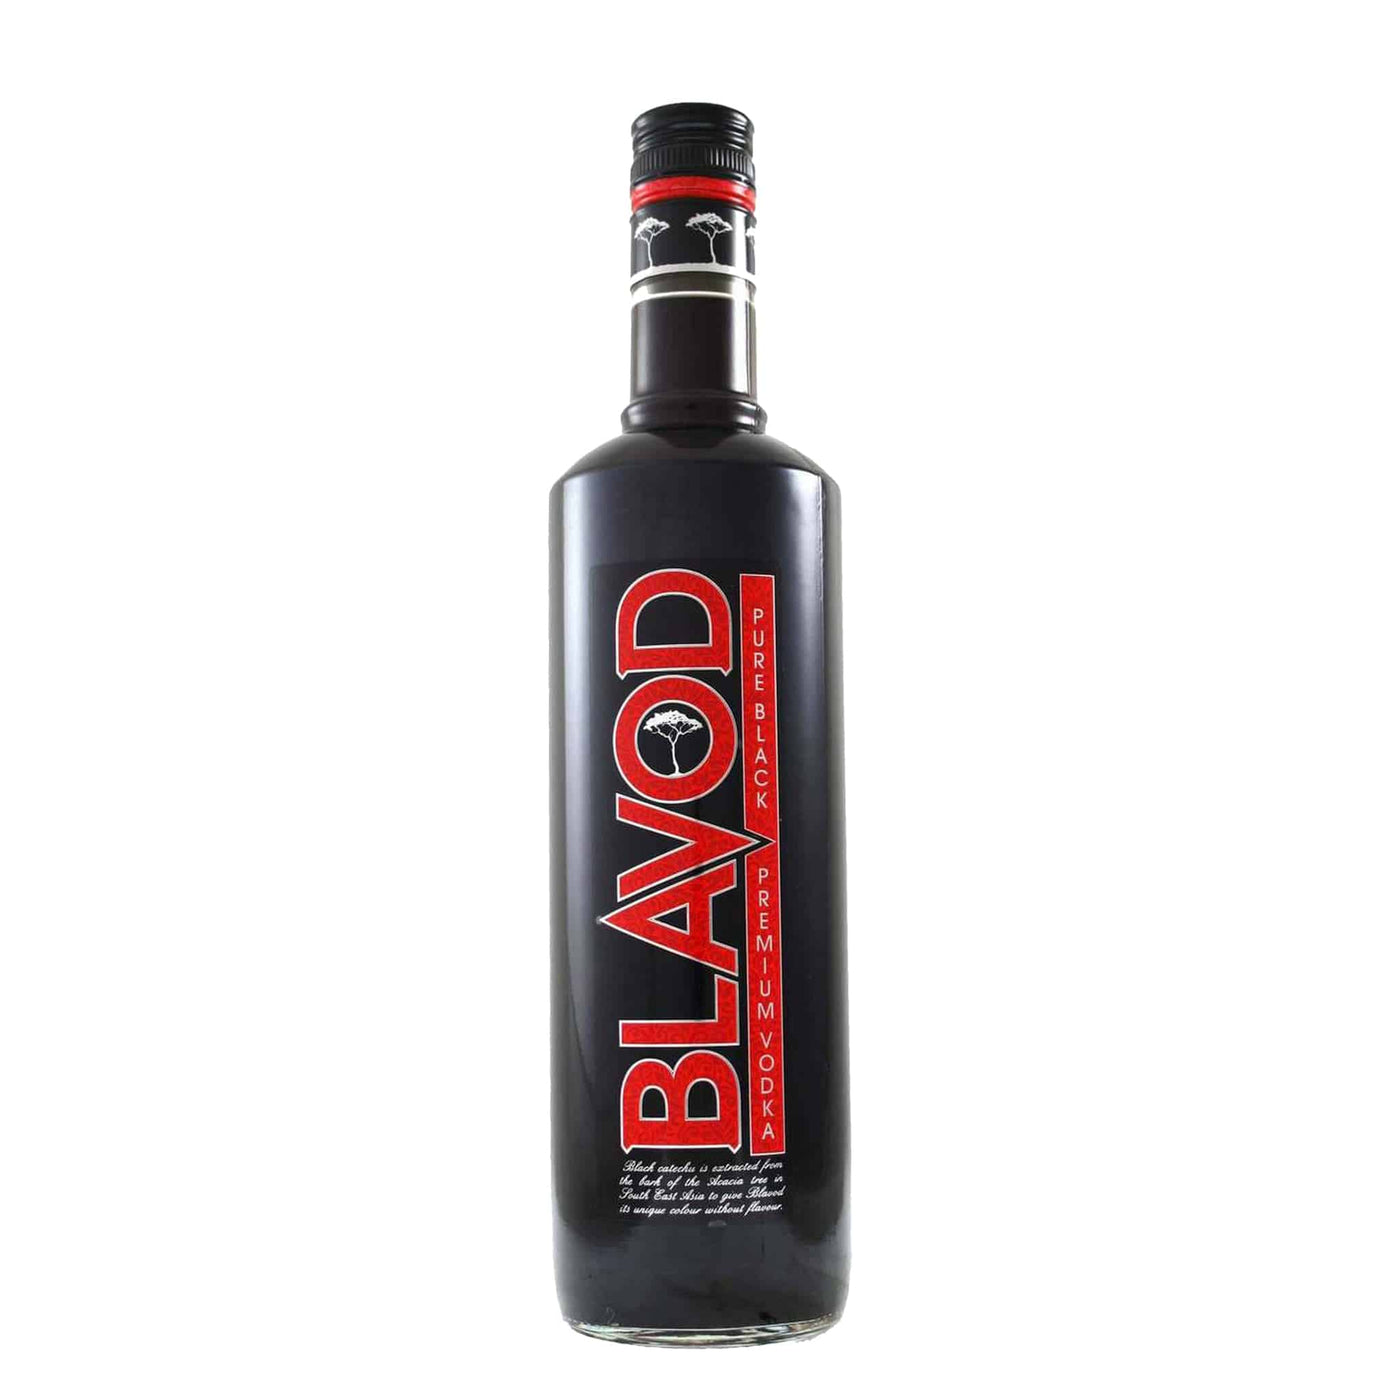 Blavod Vodka - Spiritly